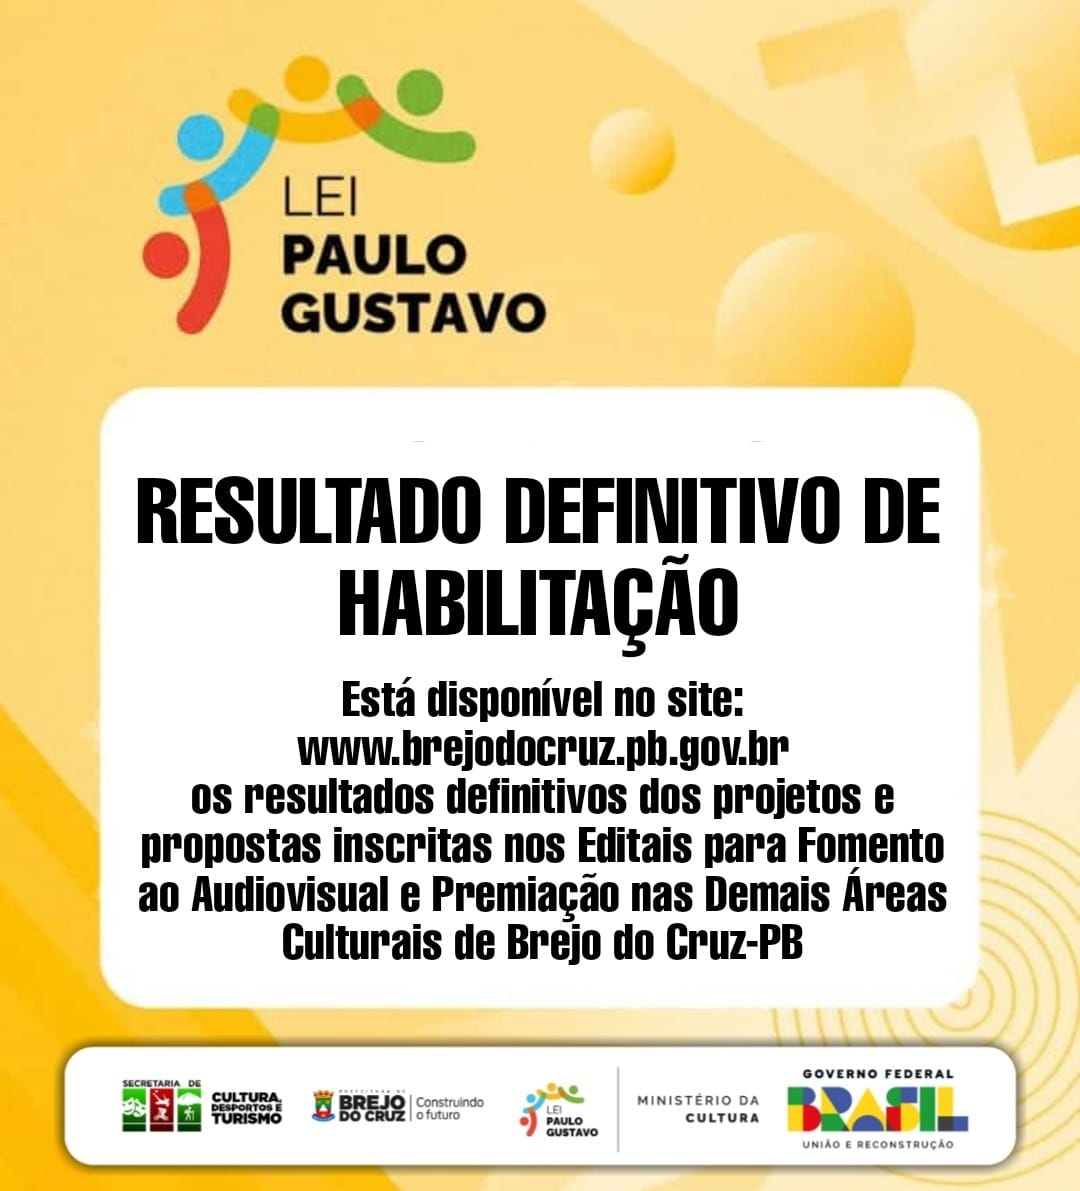 LEI PAULO GUSTAVO: Prefeitura de Brejo do Cruz torna público o Resultado Definitivo de Habilitação.